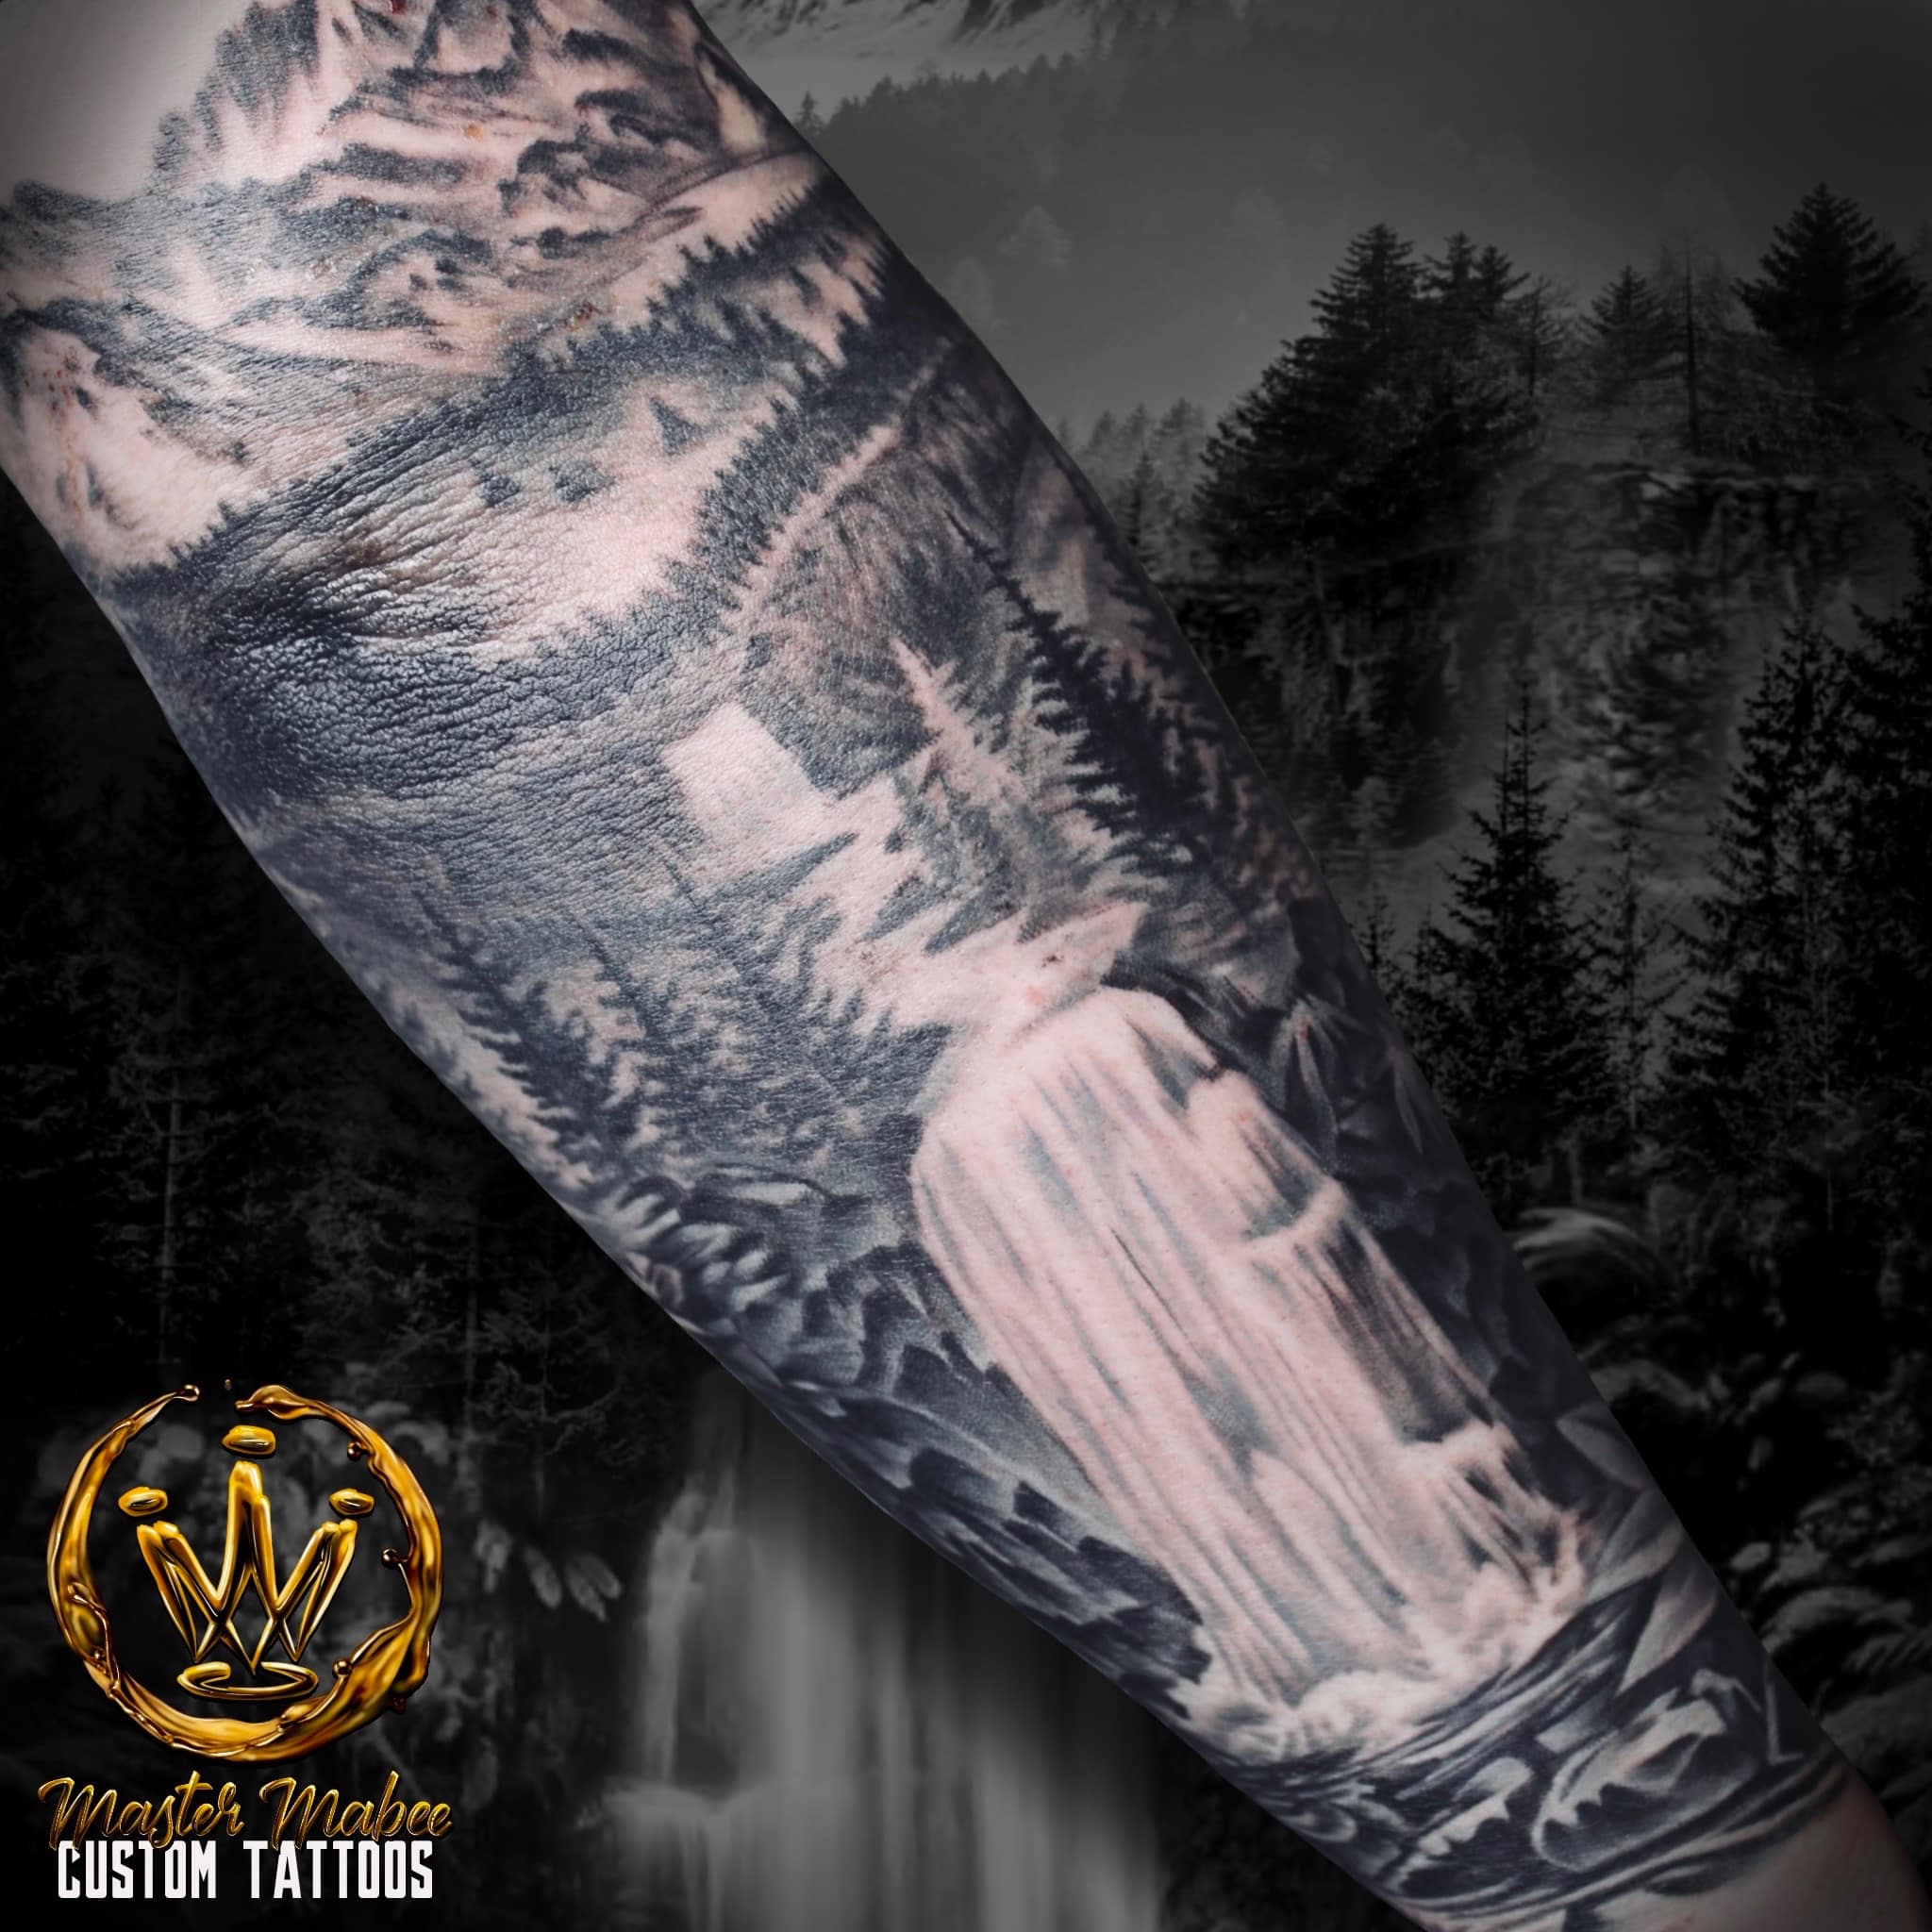 Tony Mabee, Tattoo Artist at Revolt Tattoos